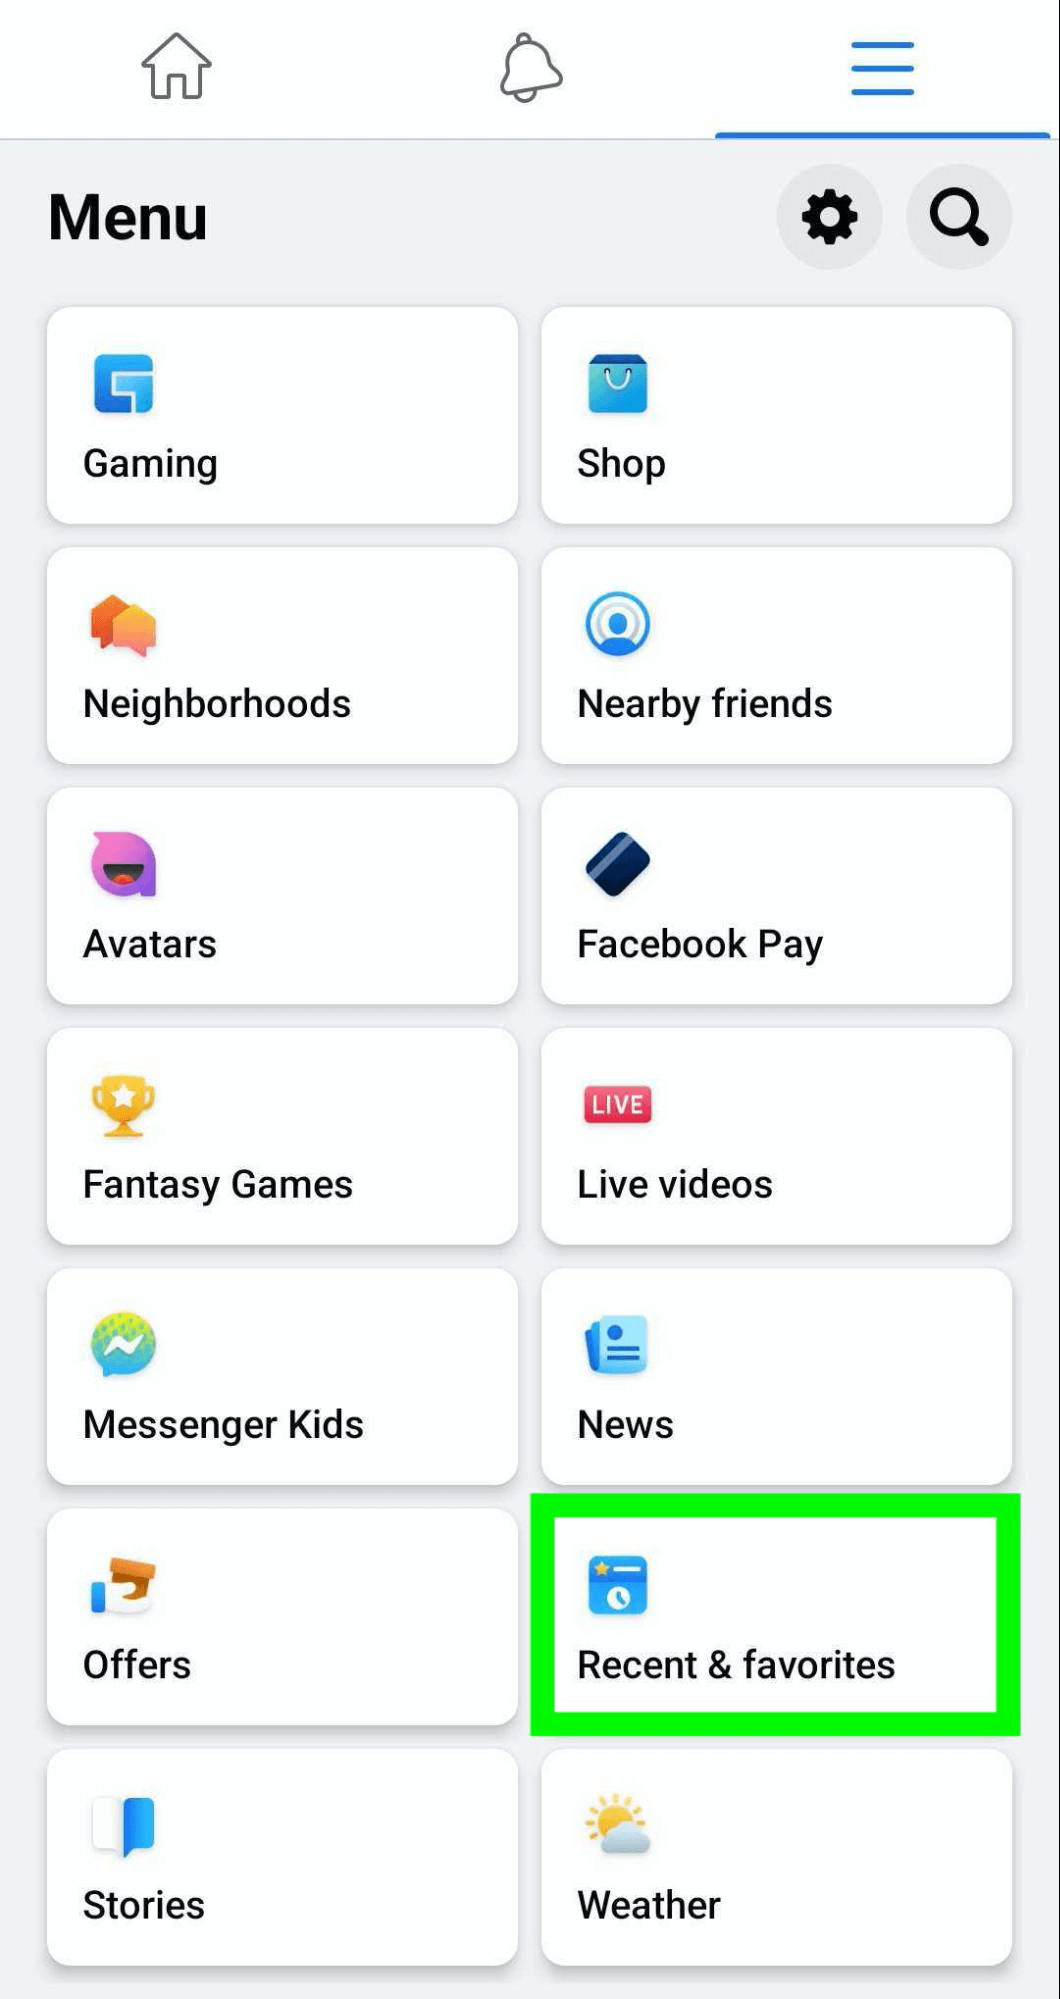 image of Facebook menu showing Recents & Favorites option